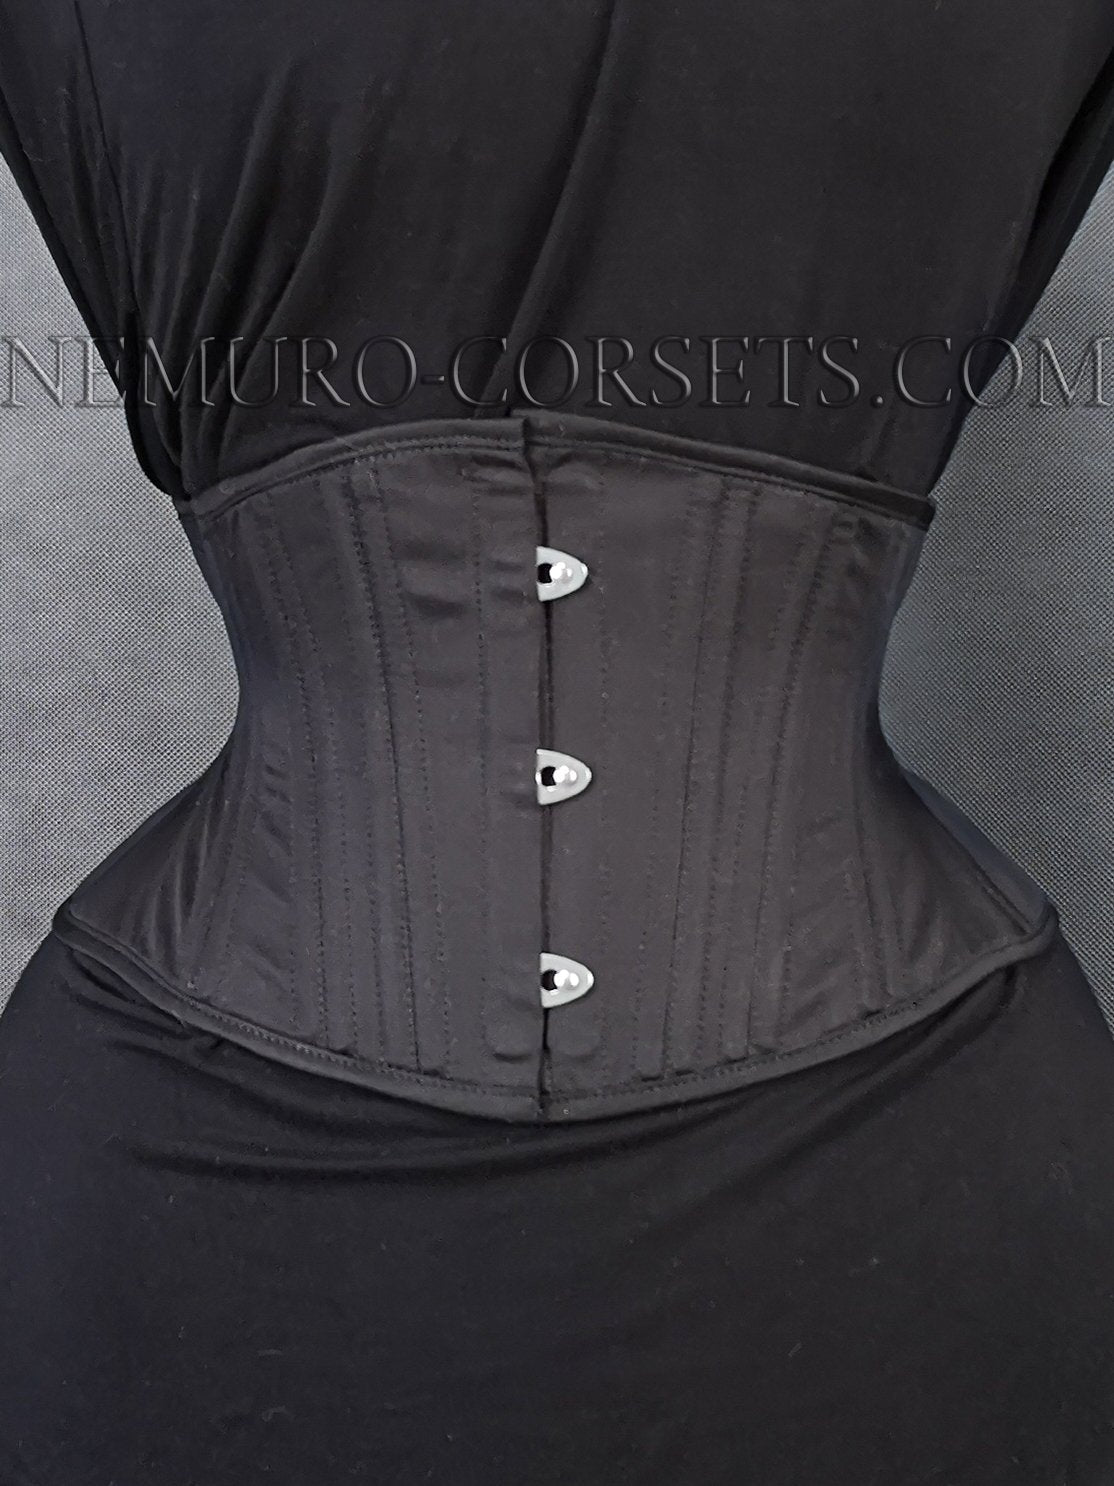 https://nemuro-corsets.com/cdn/shop/products/Img_20200919_123150_1024x1024@2x.jpg?v=1610511549